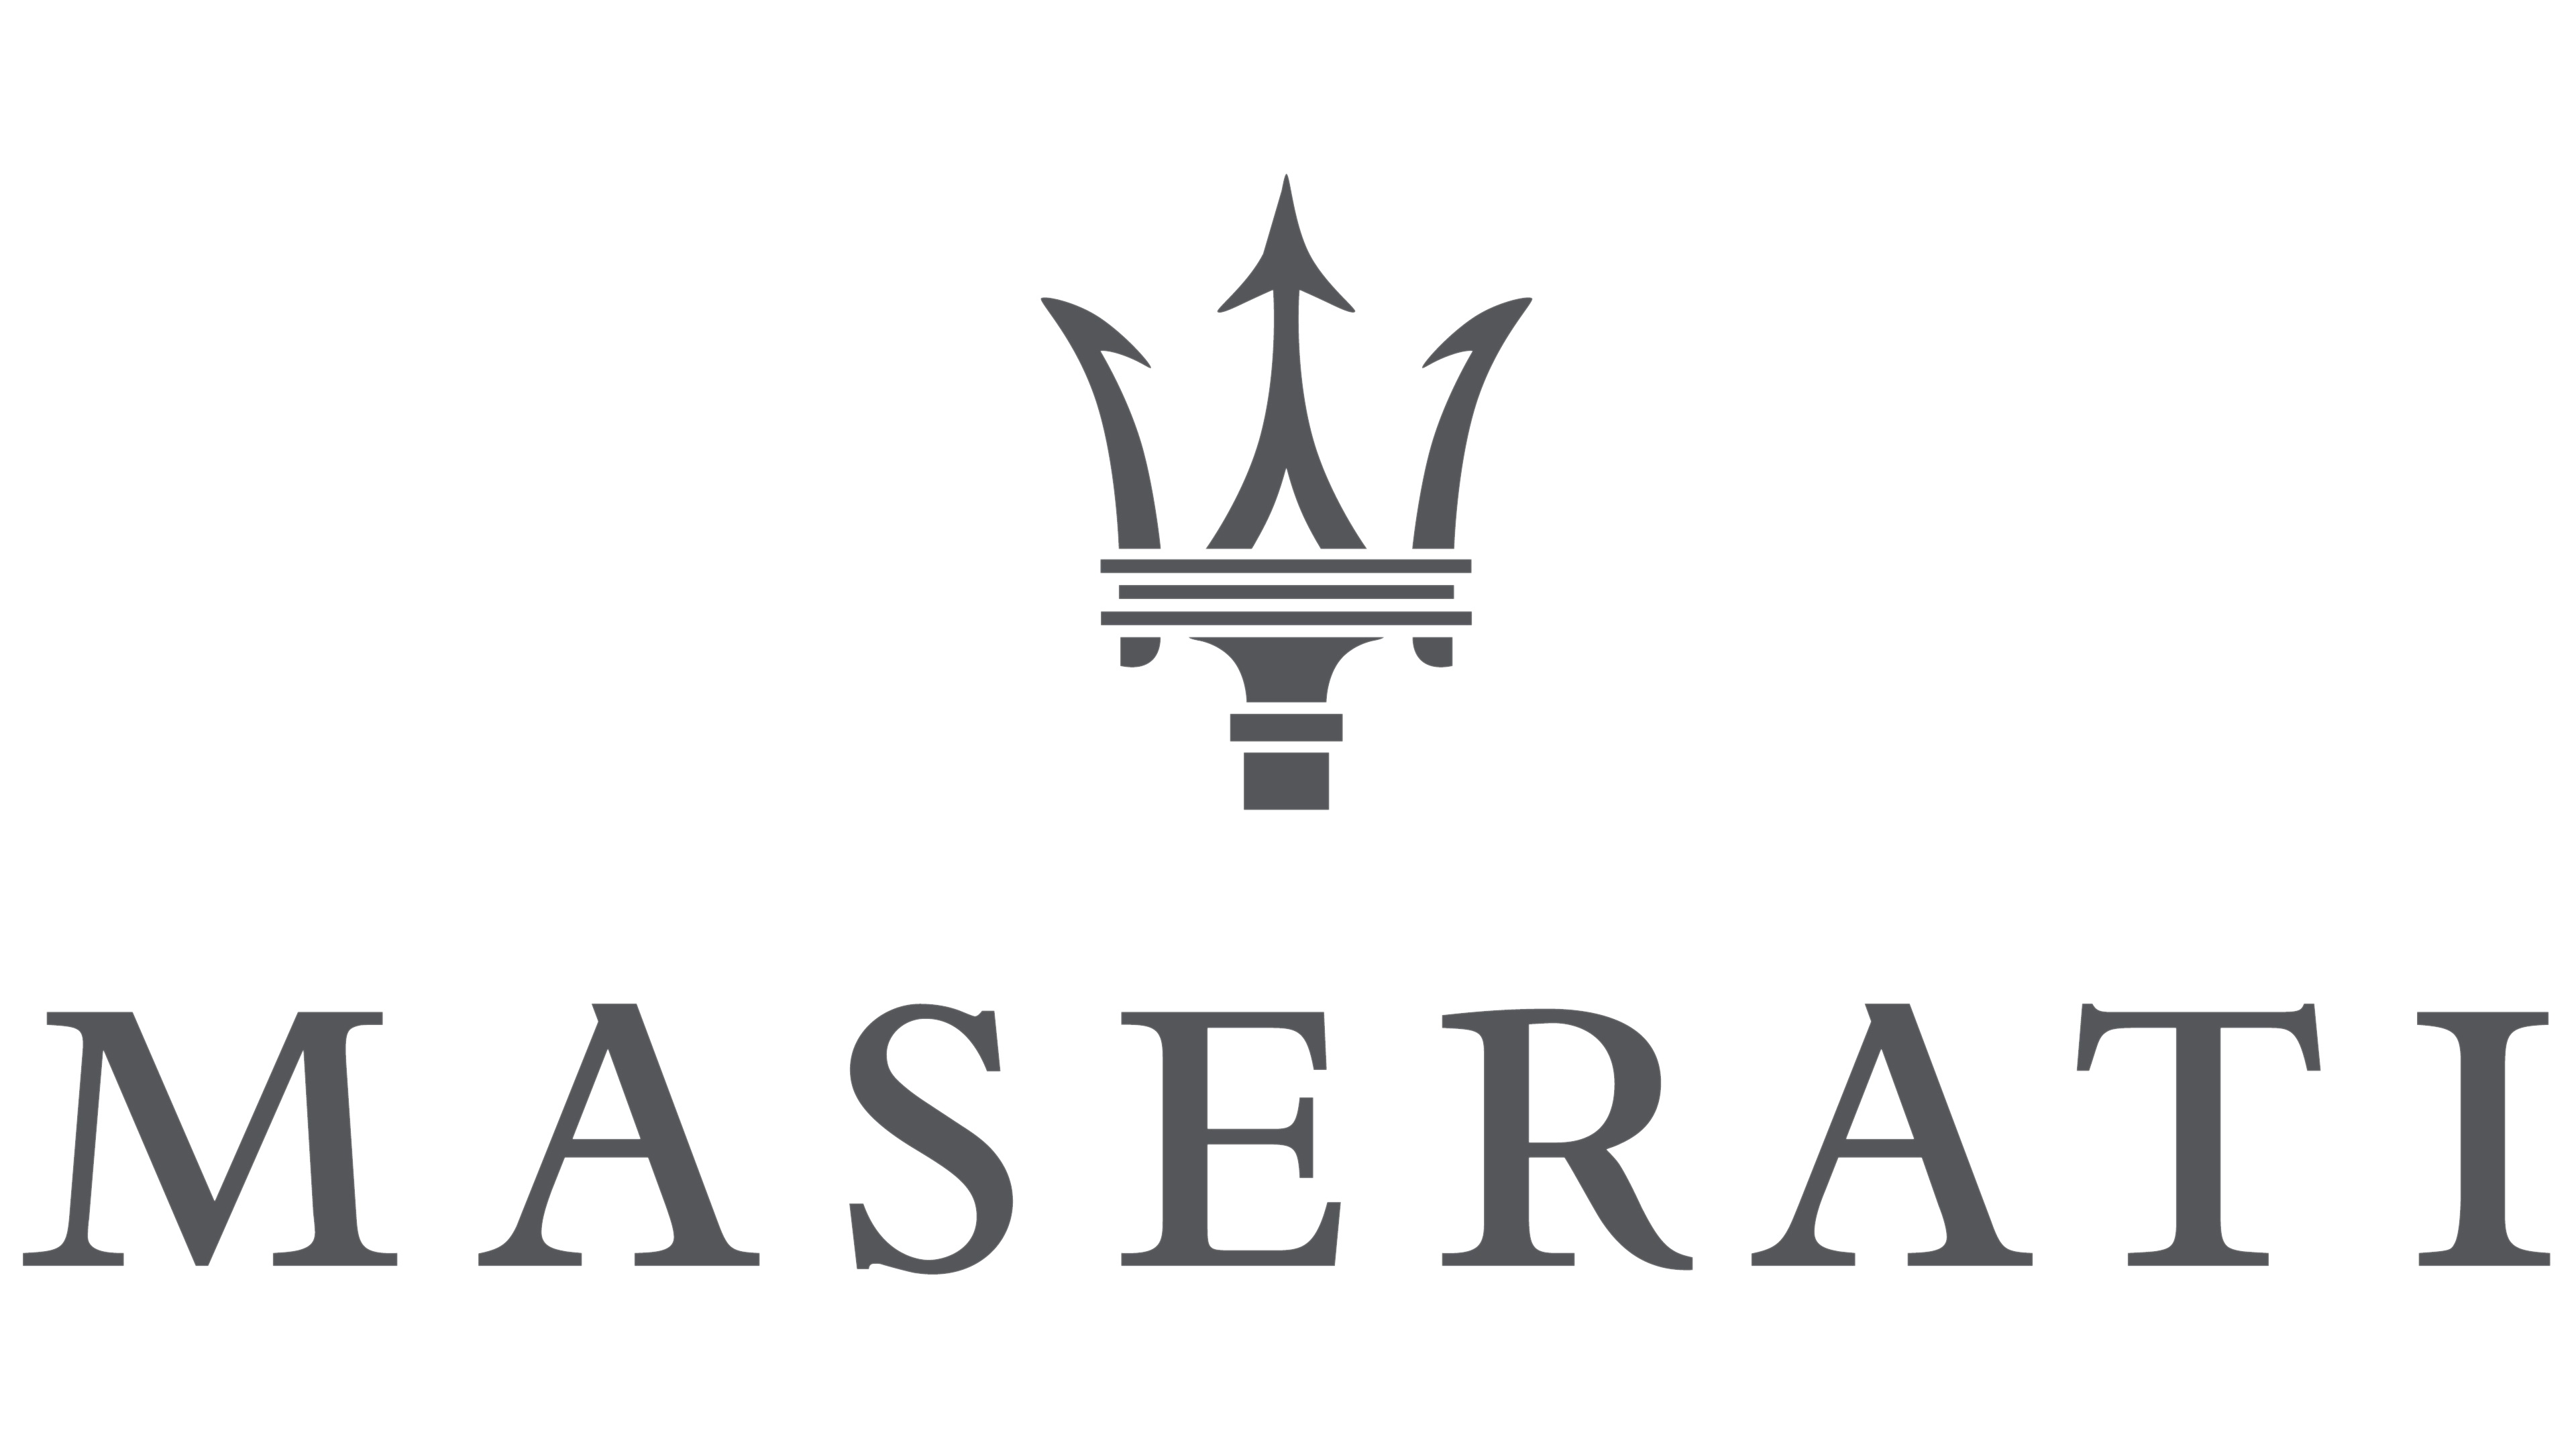 Maserati Logotipo Emblema El fondo blanco autos, automóvil, automóviles, el carro Coches